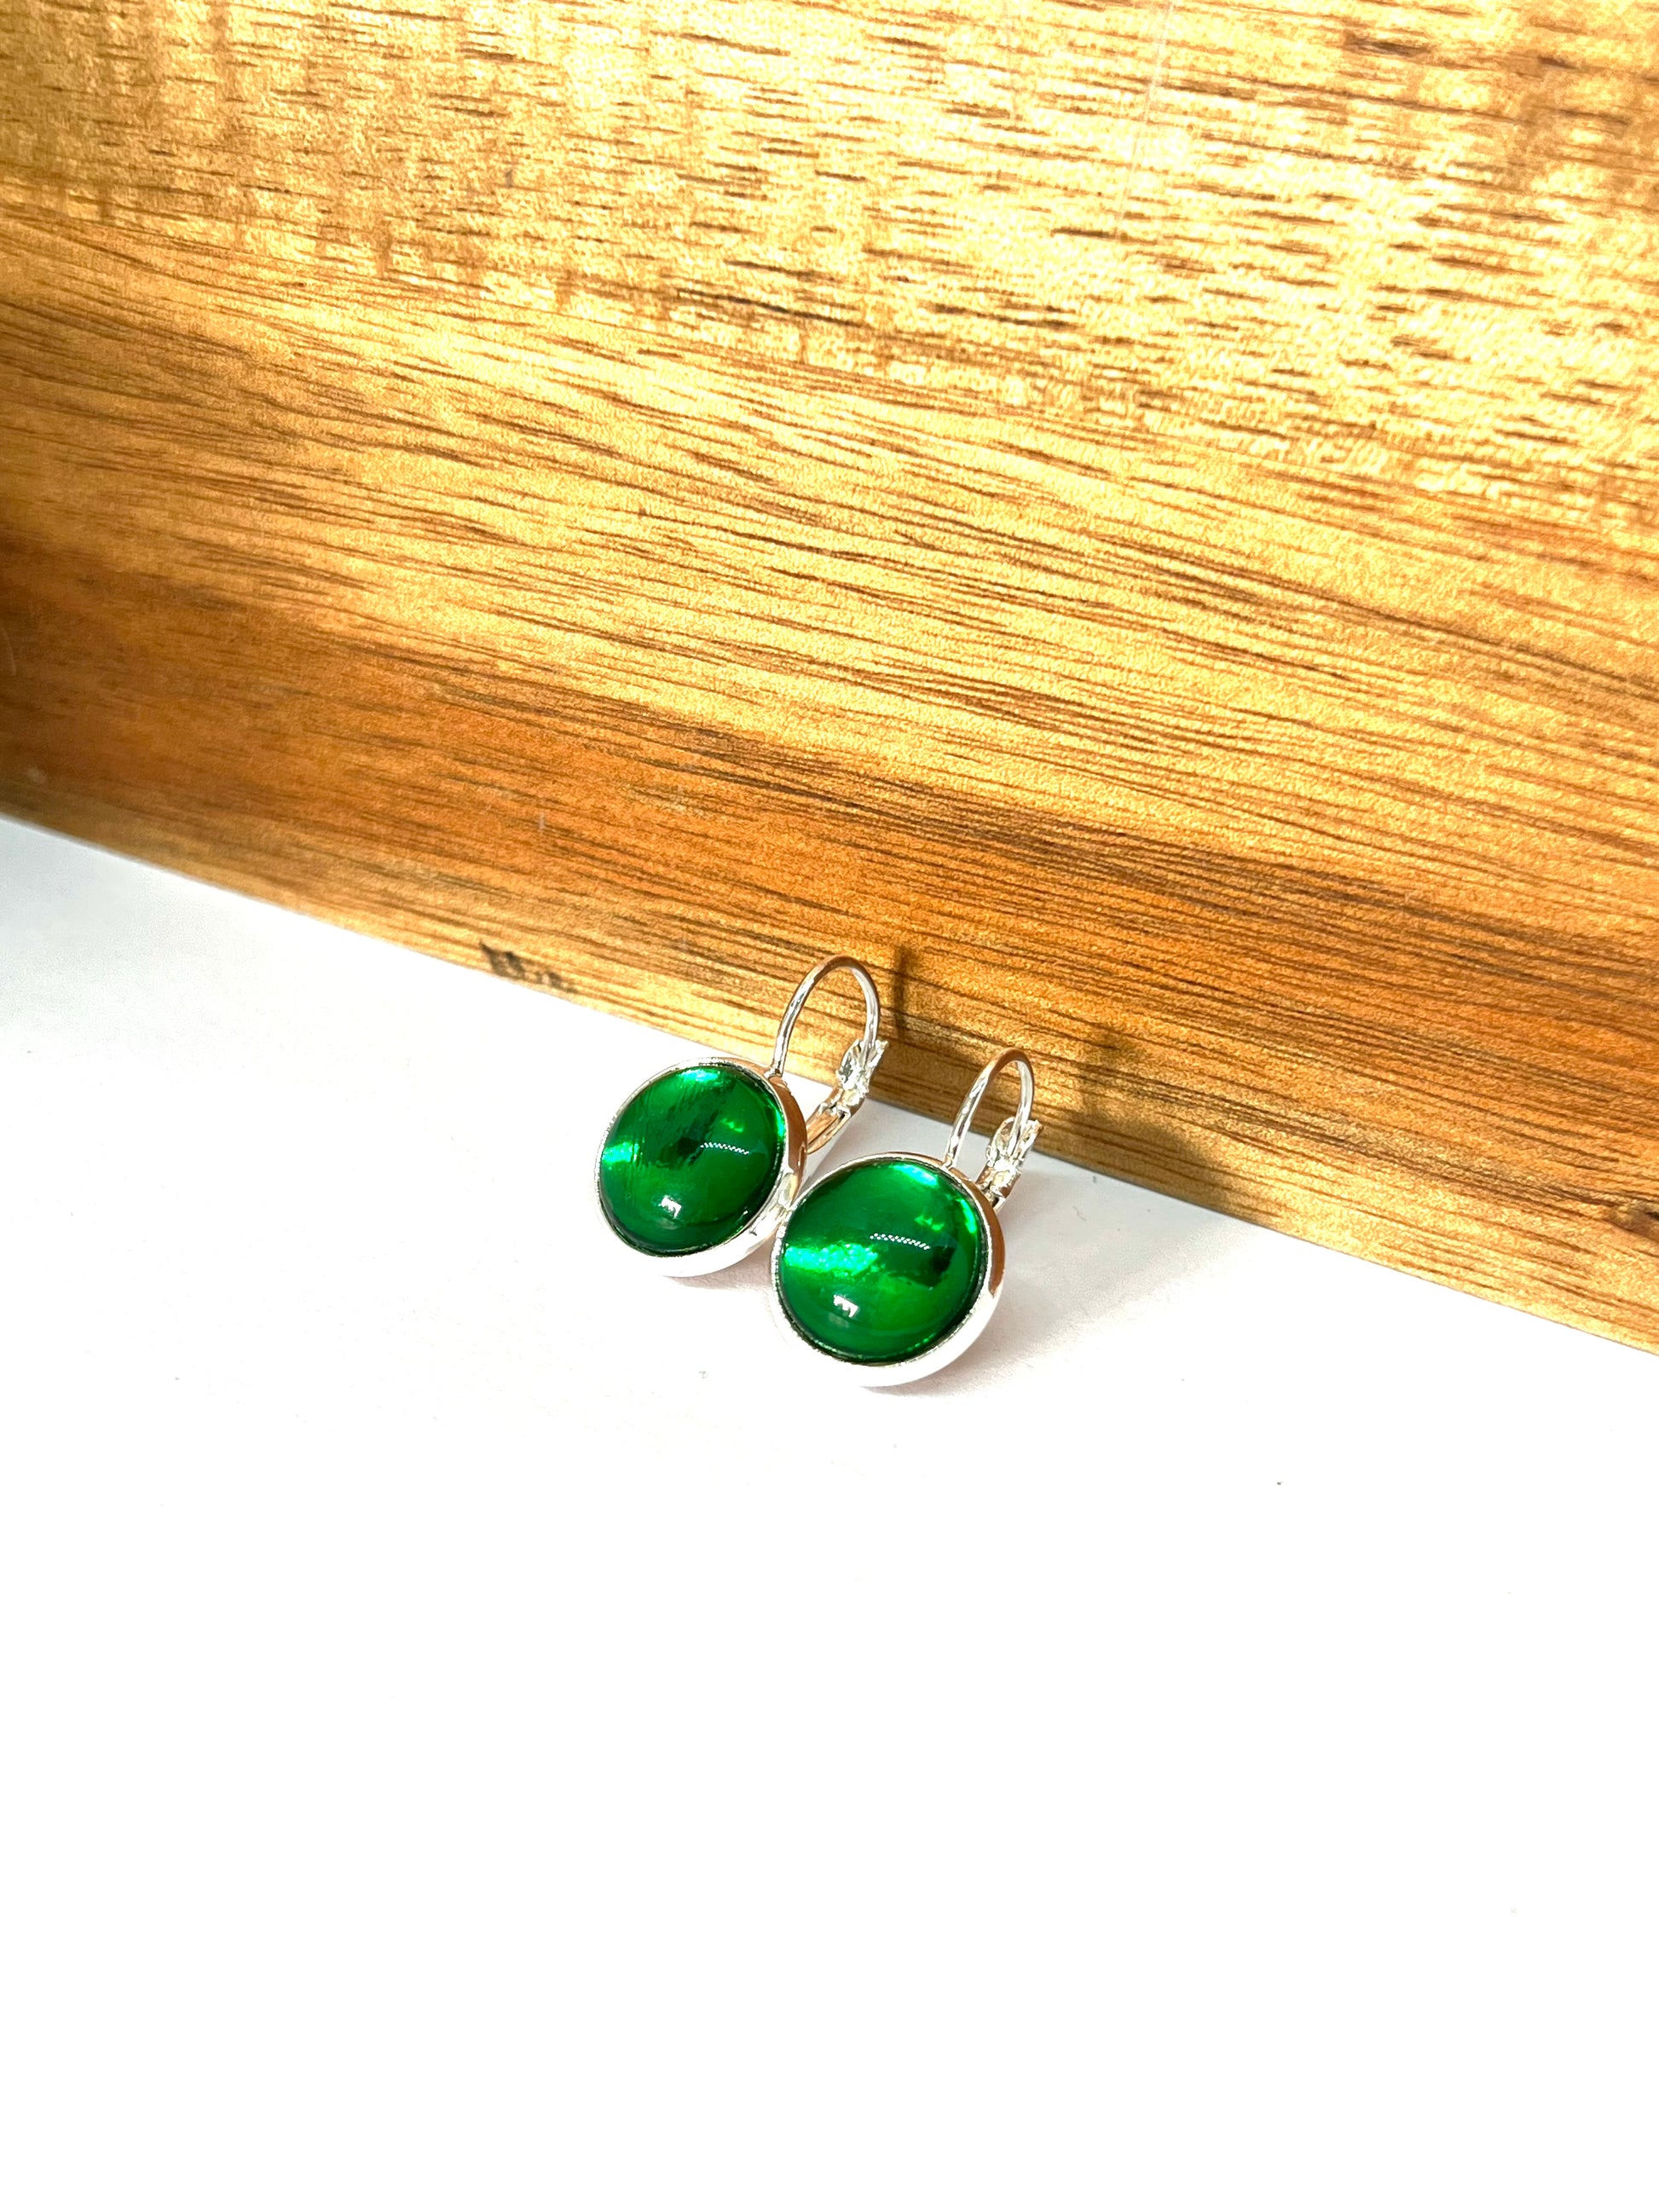 Emerald green metallic  glass dome earrings